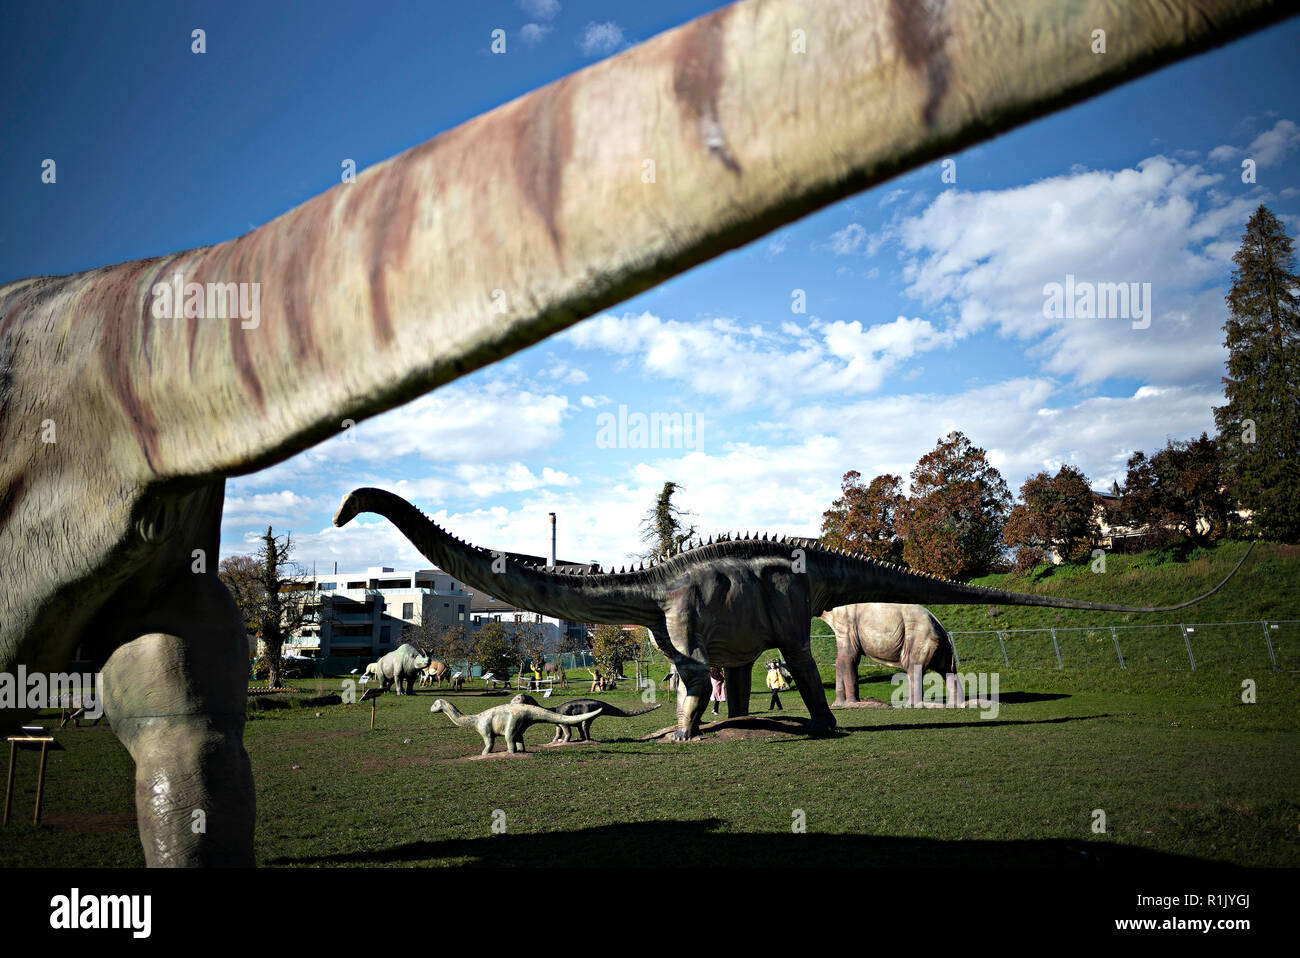 Zürich, 07.11.12. 25 Nov, 2018. Menschen besuchen die Welt der Dinosaurier  in Rapperswil-Jona, Schweiz, Nov. 12, 2018. 60 lebensgroße Dinosaurier und  genaue Replikate werden auf dem Display neben dem Zürich See bis